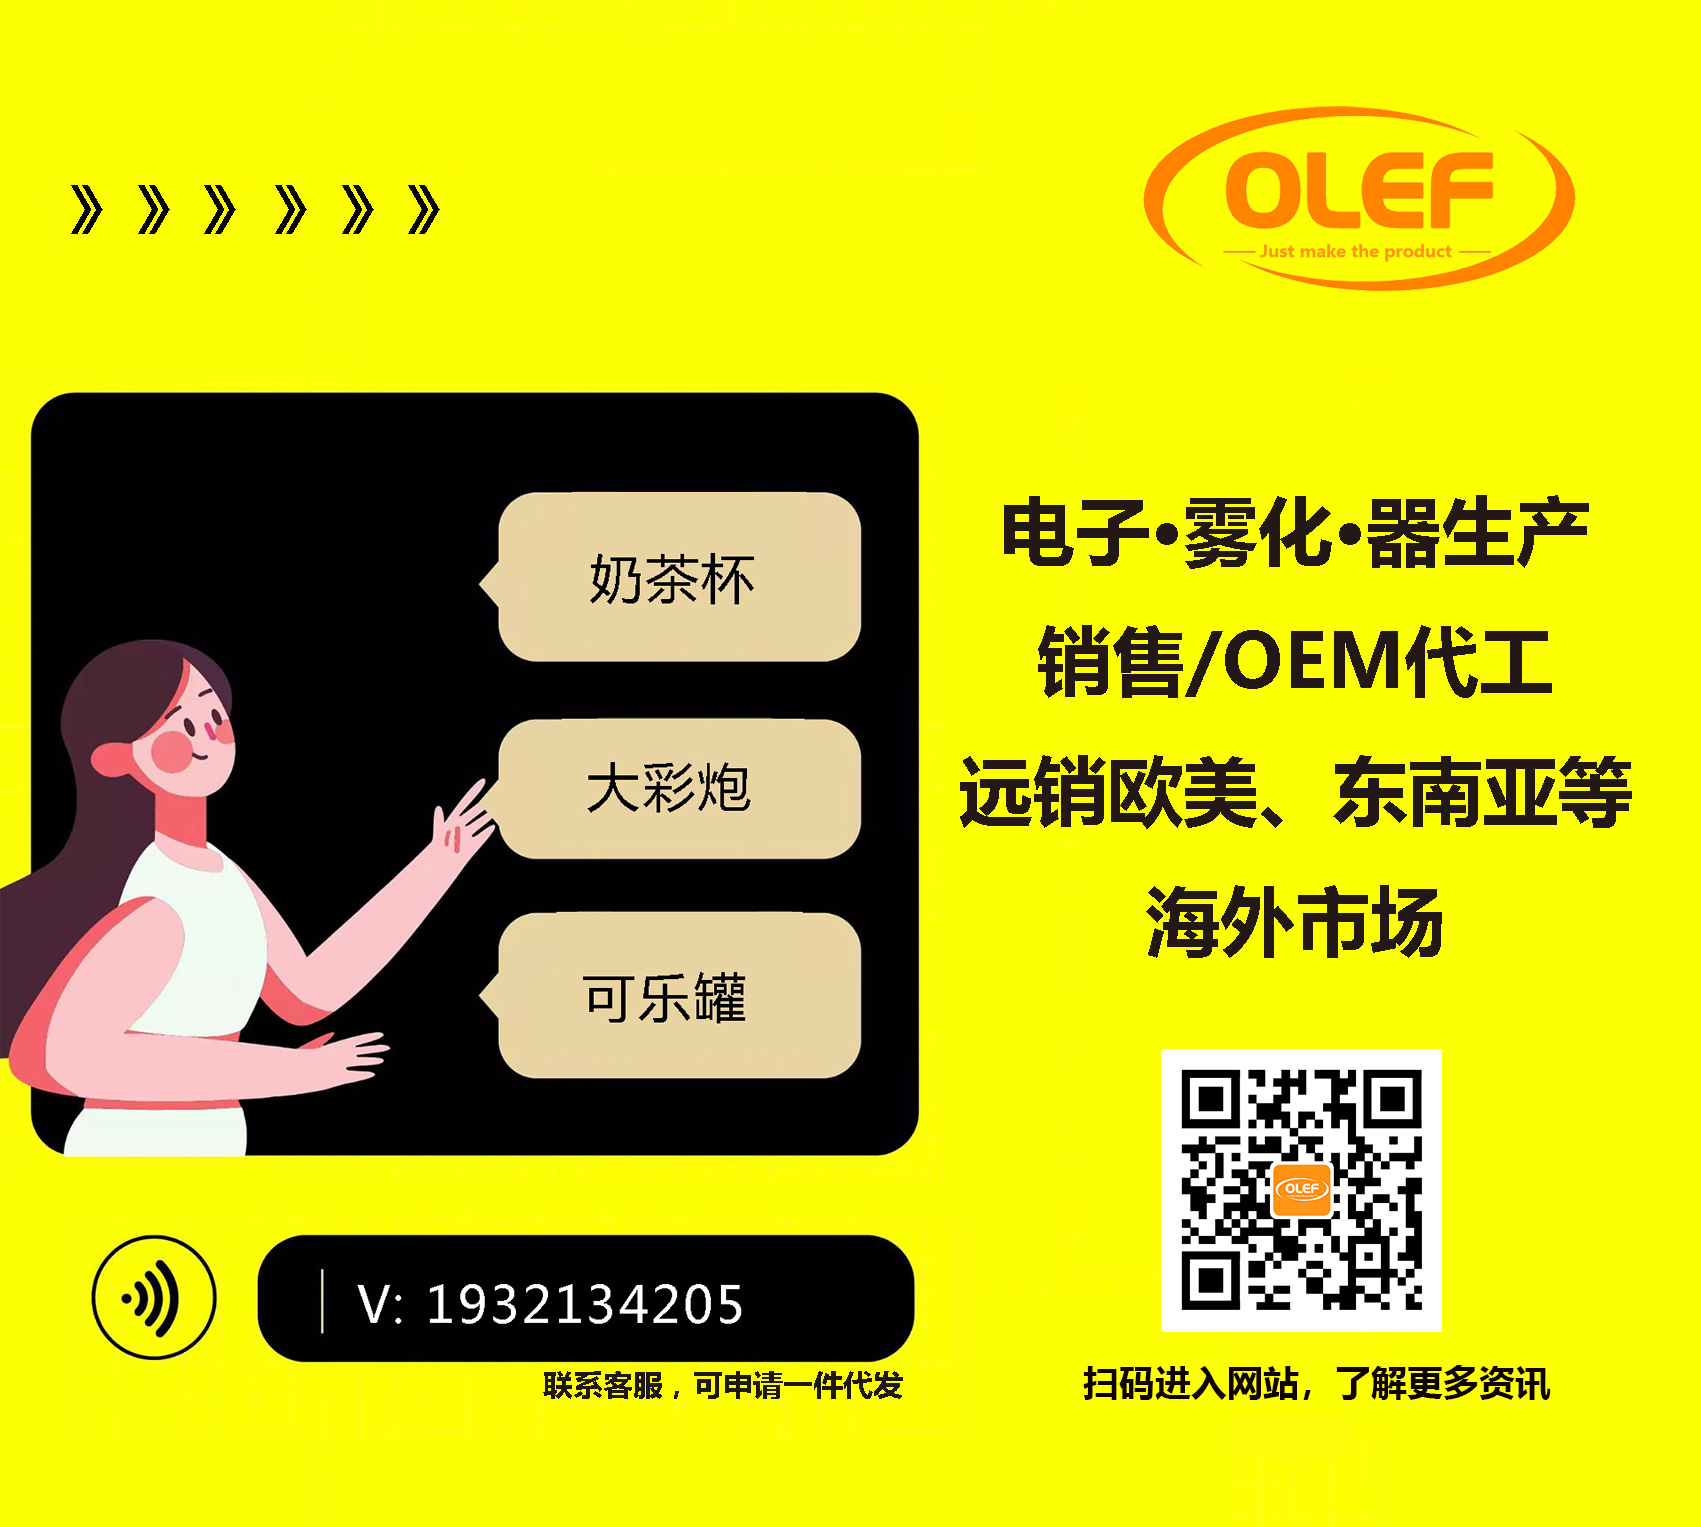 【奥乐飞资讯】获得电子烟生产许可证企业目前已达612家